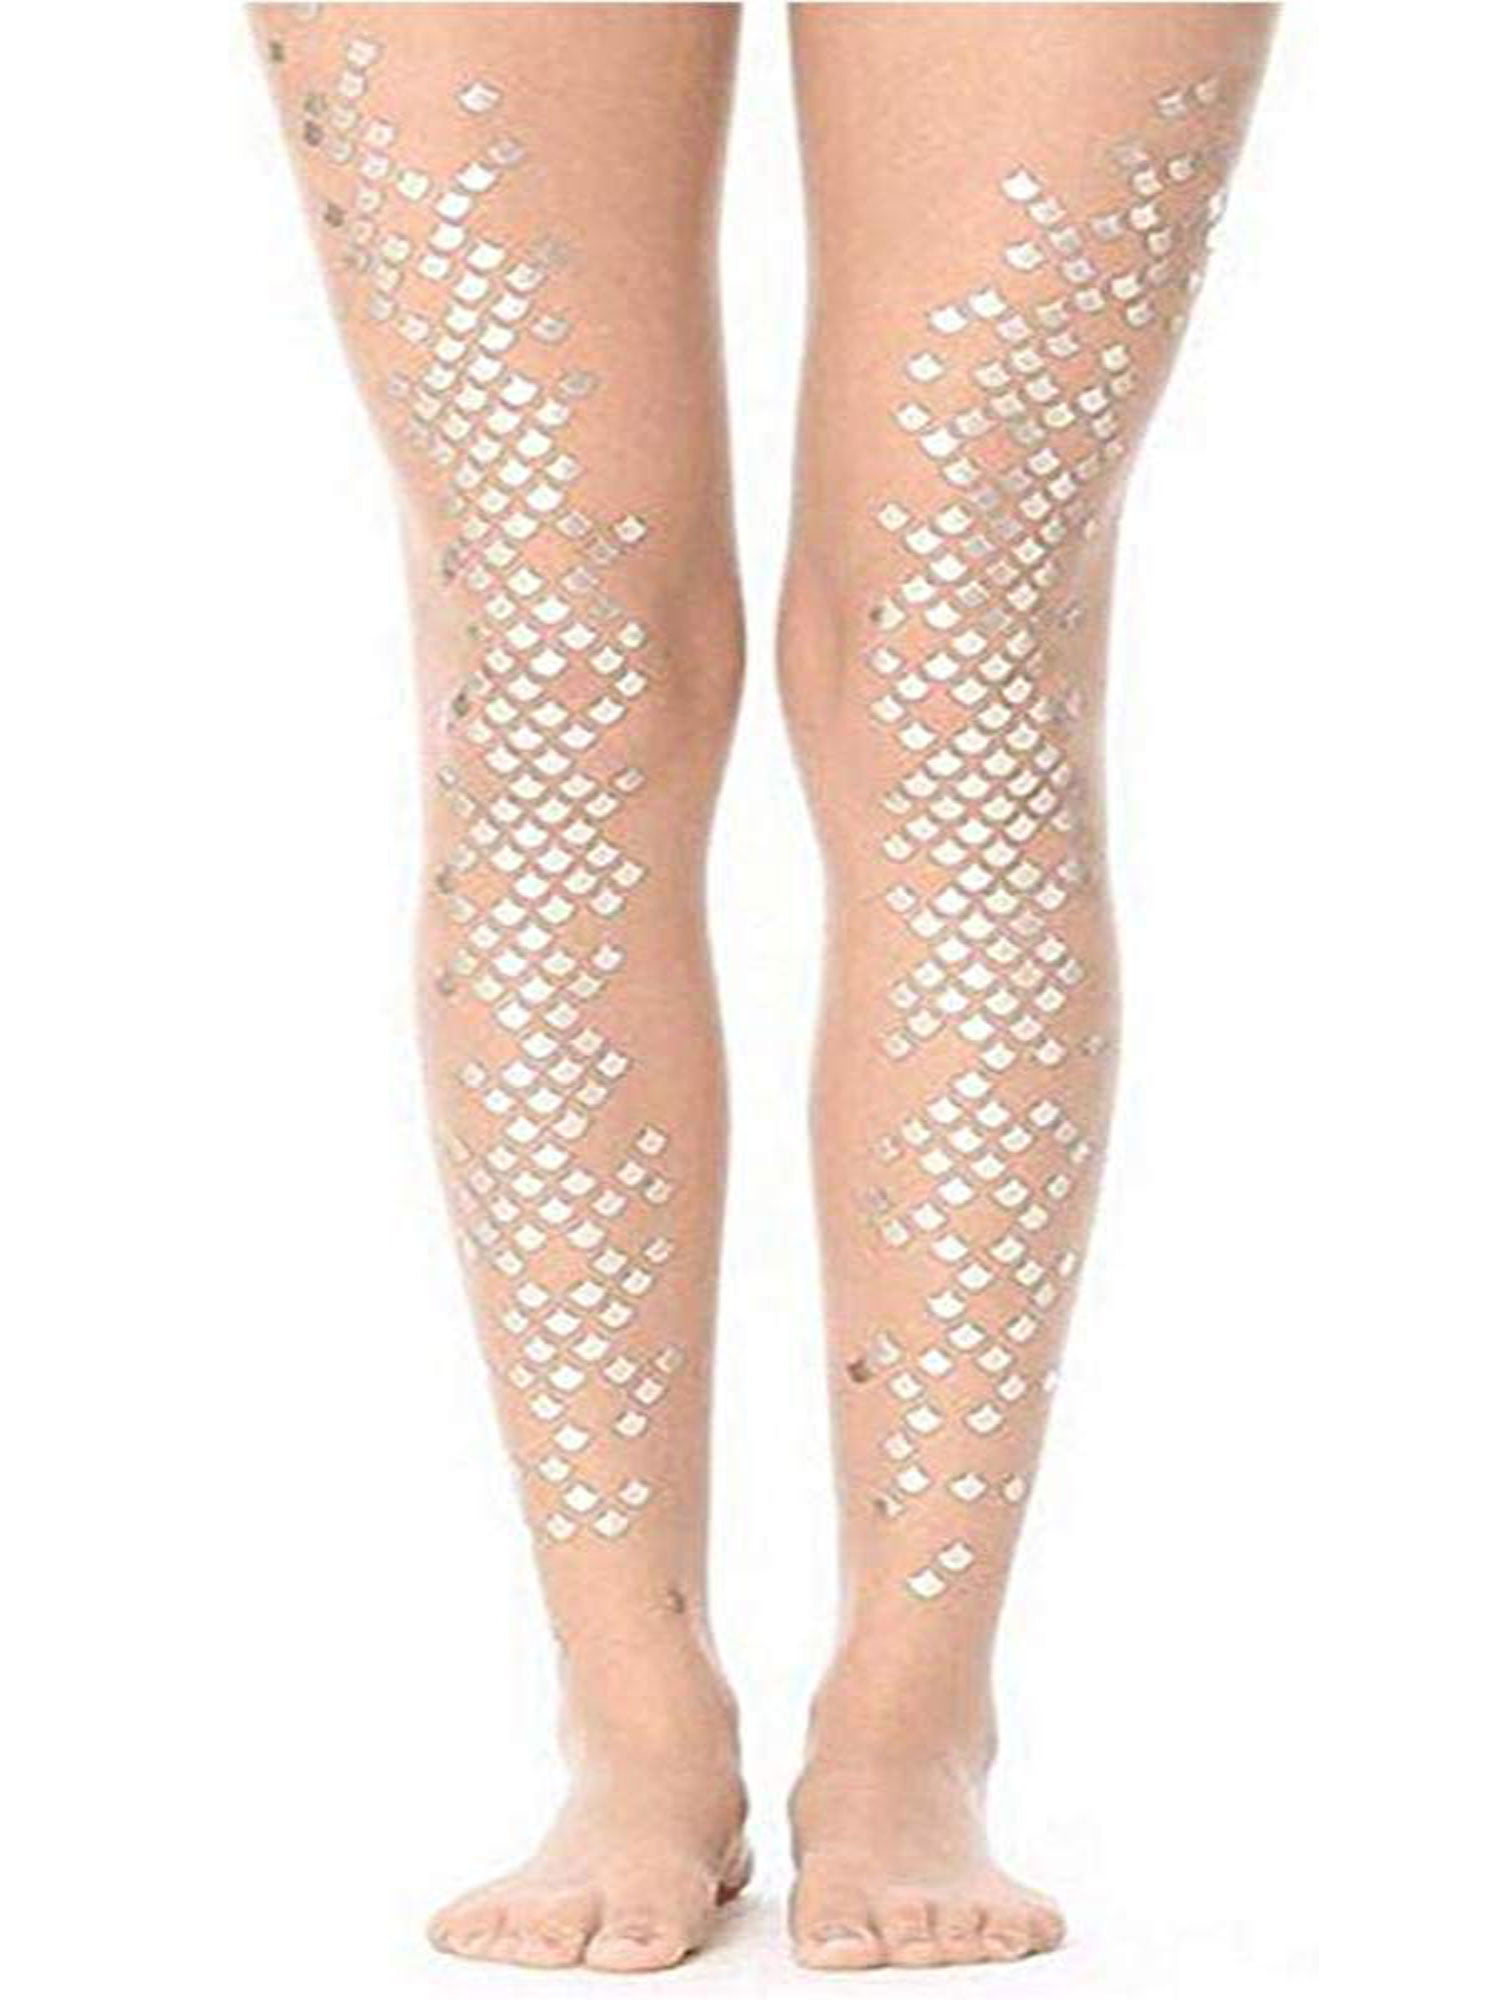 Gold mermaid Transparent sheer nude knee highs Socks 